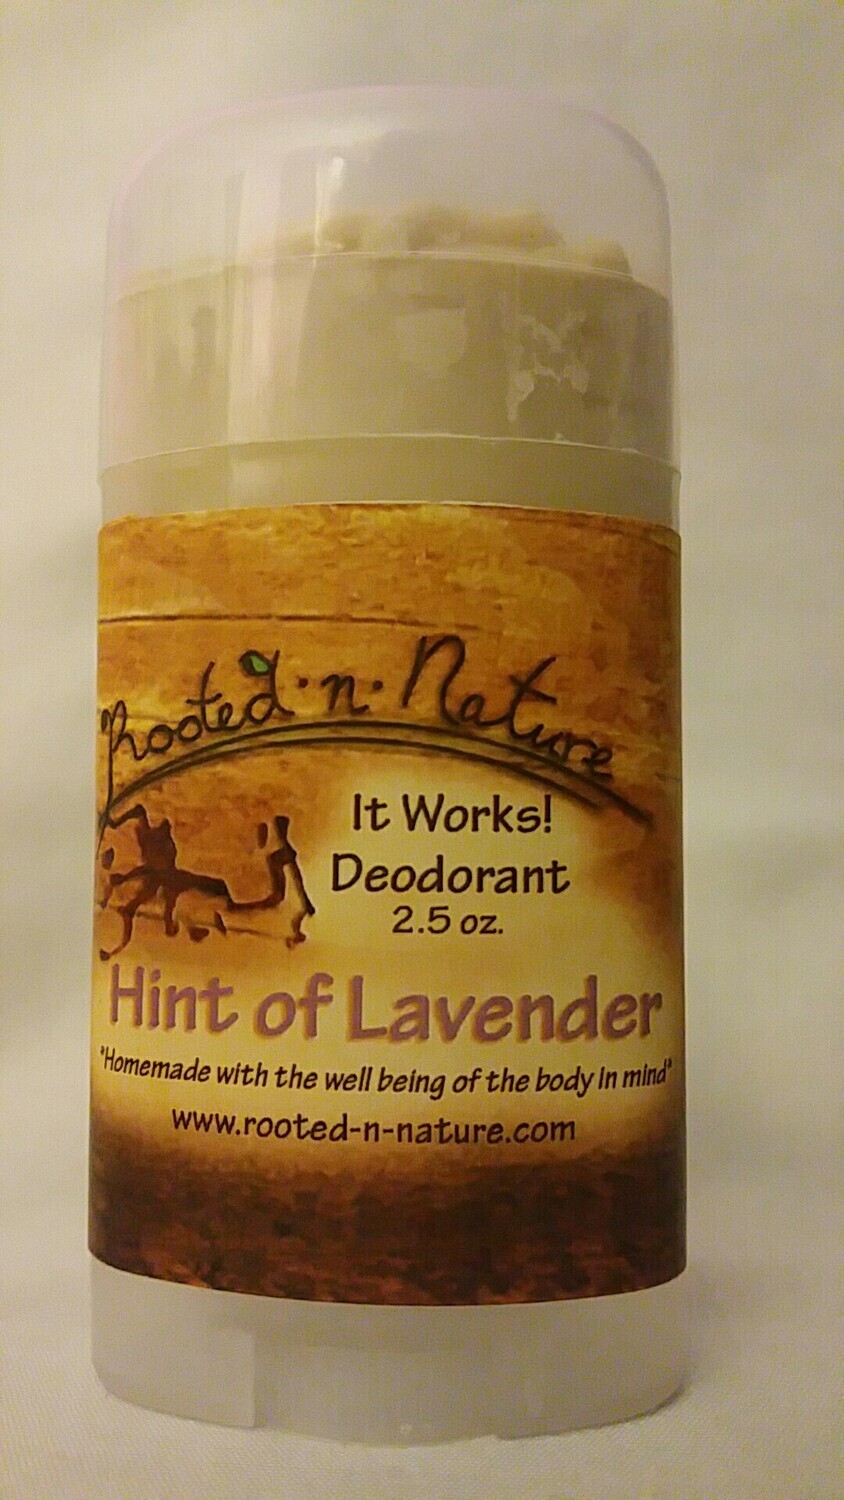 It Works! Deodorant Original